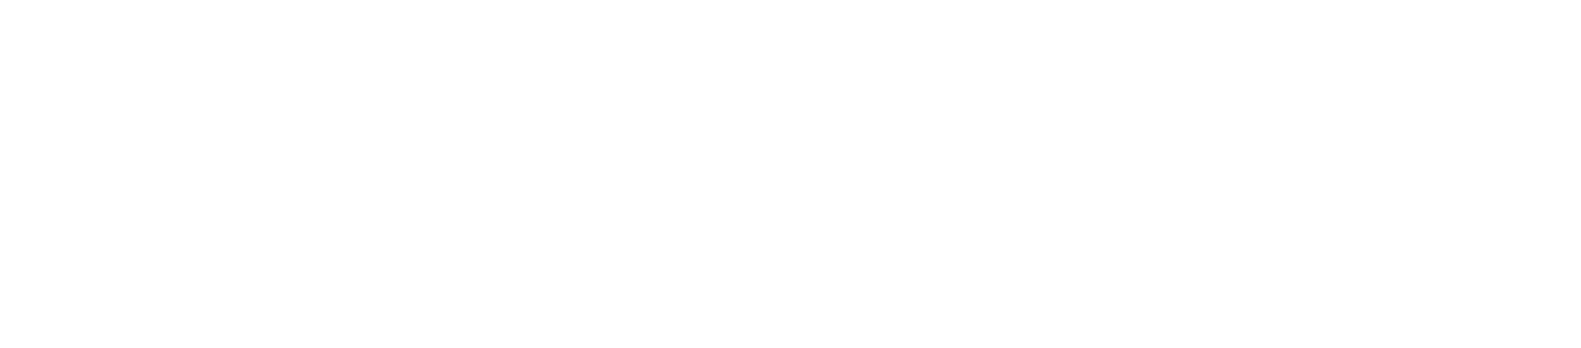 Osotspa logo large for dark backgrounds (transparent PNG)